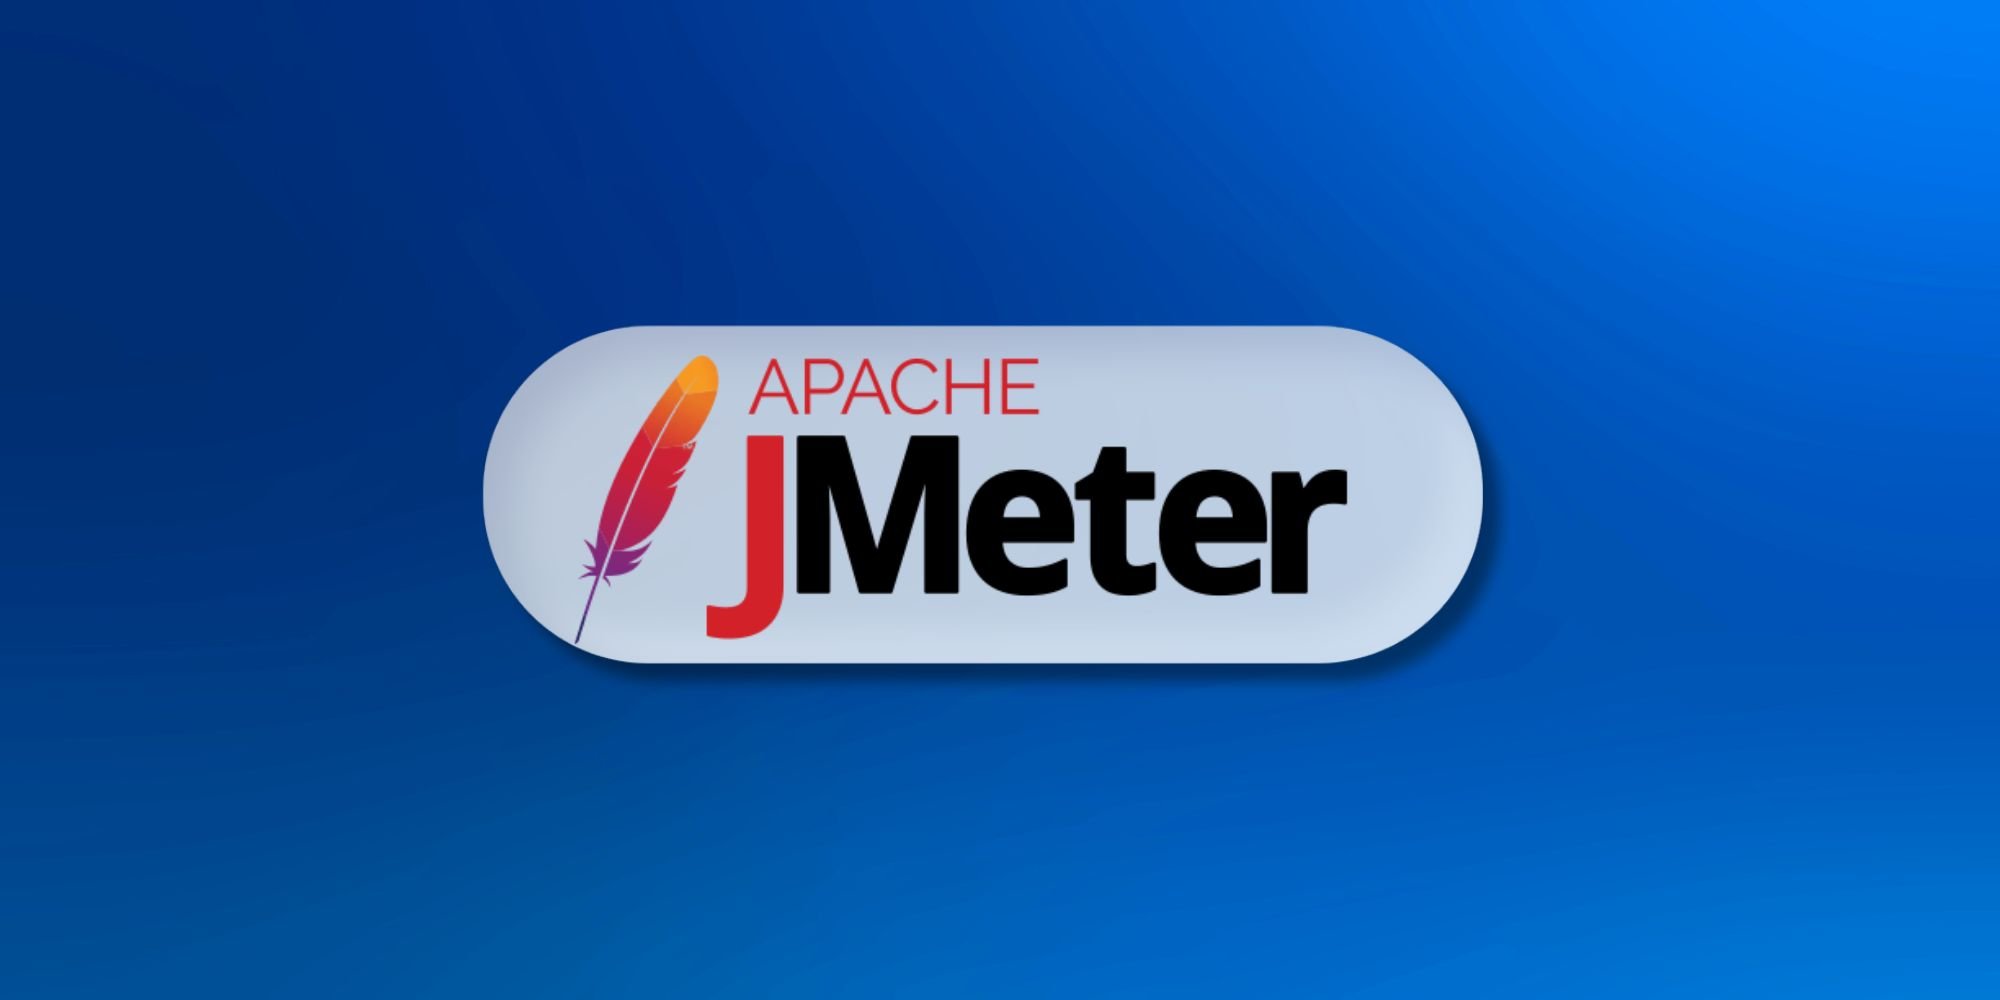 JMeter Training in Pune